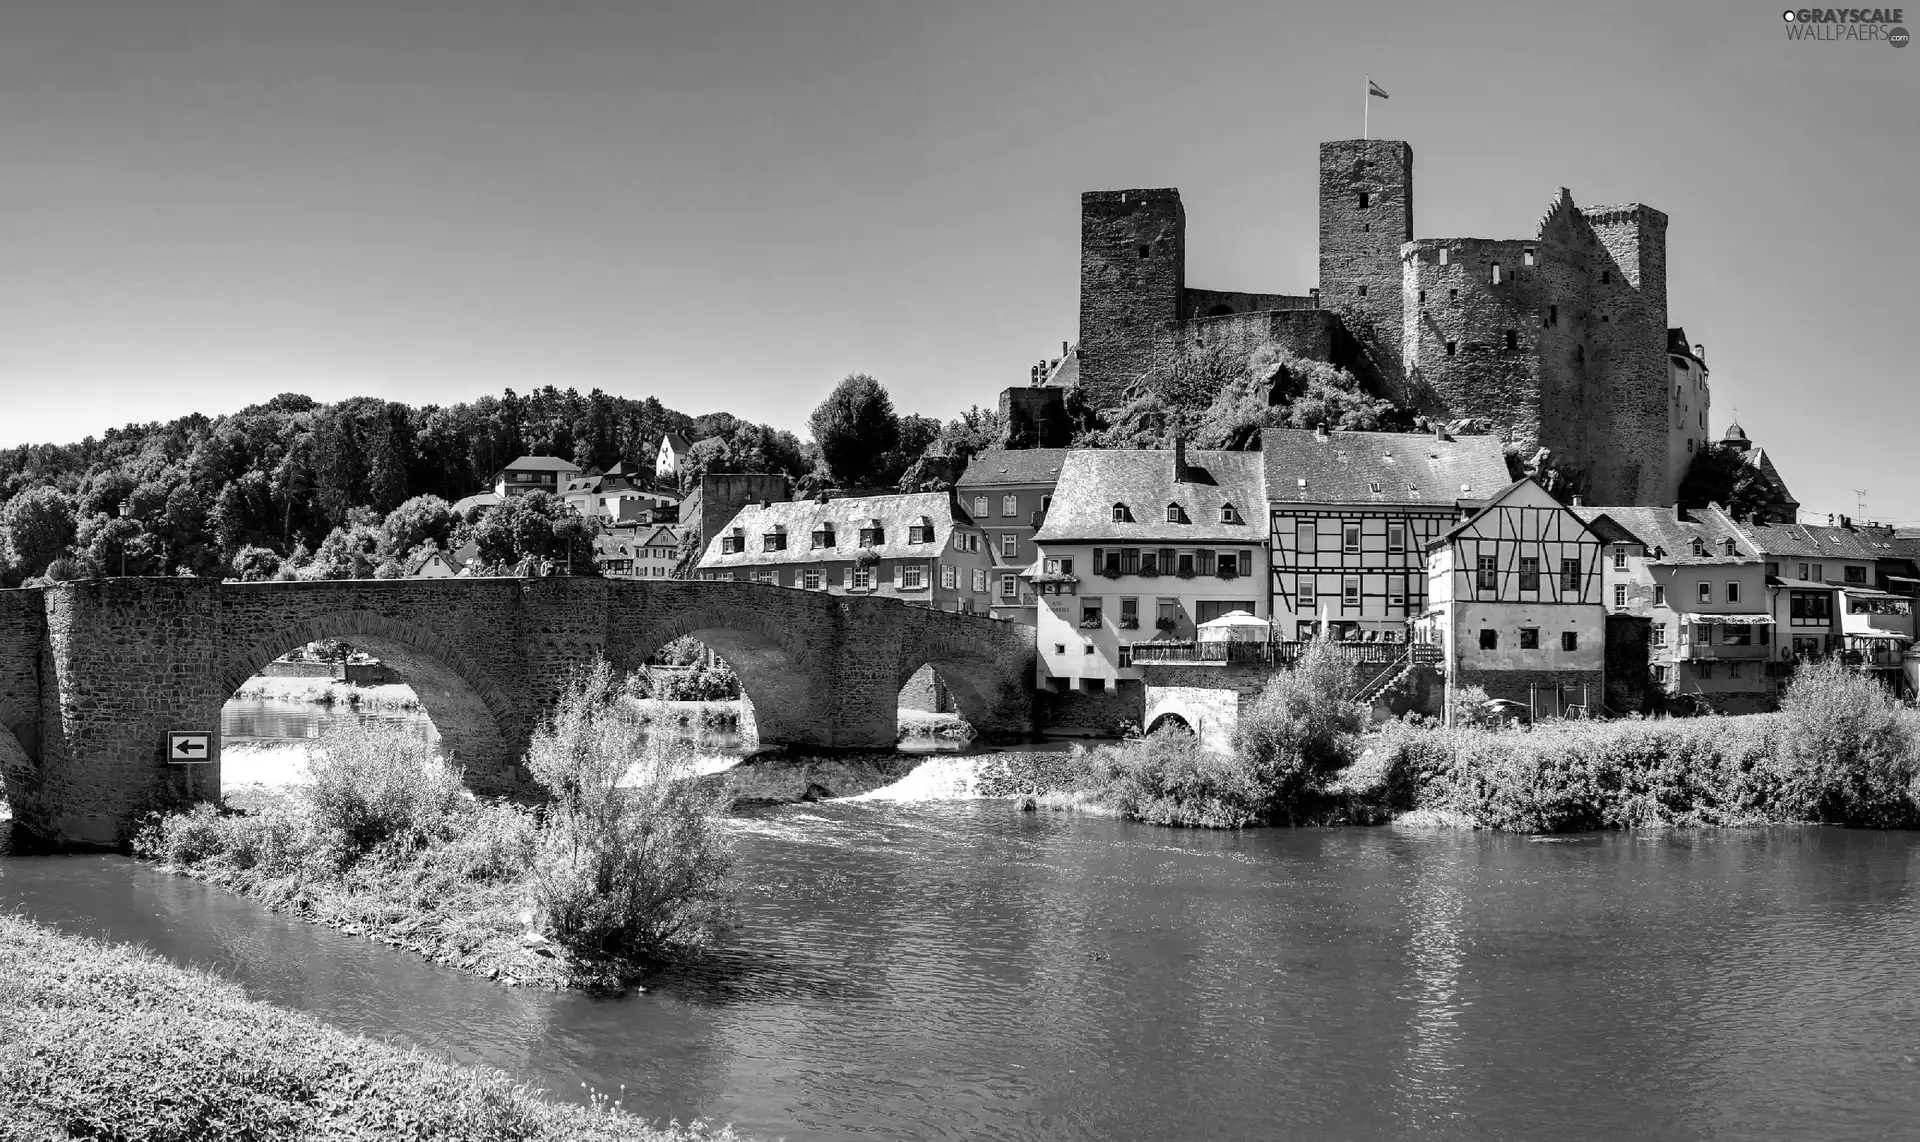 River, Castle, Houses, bridge